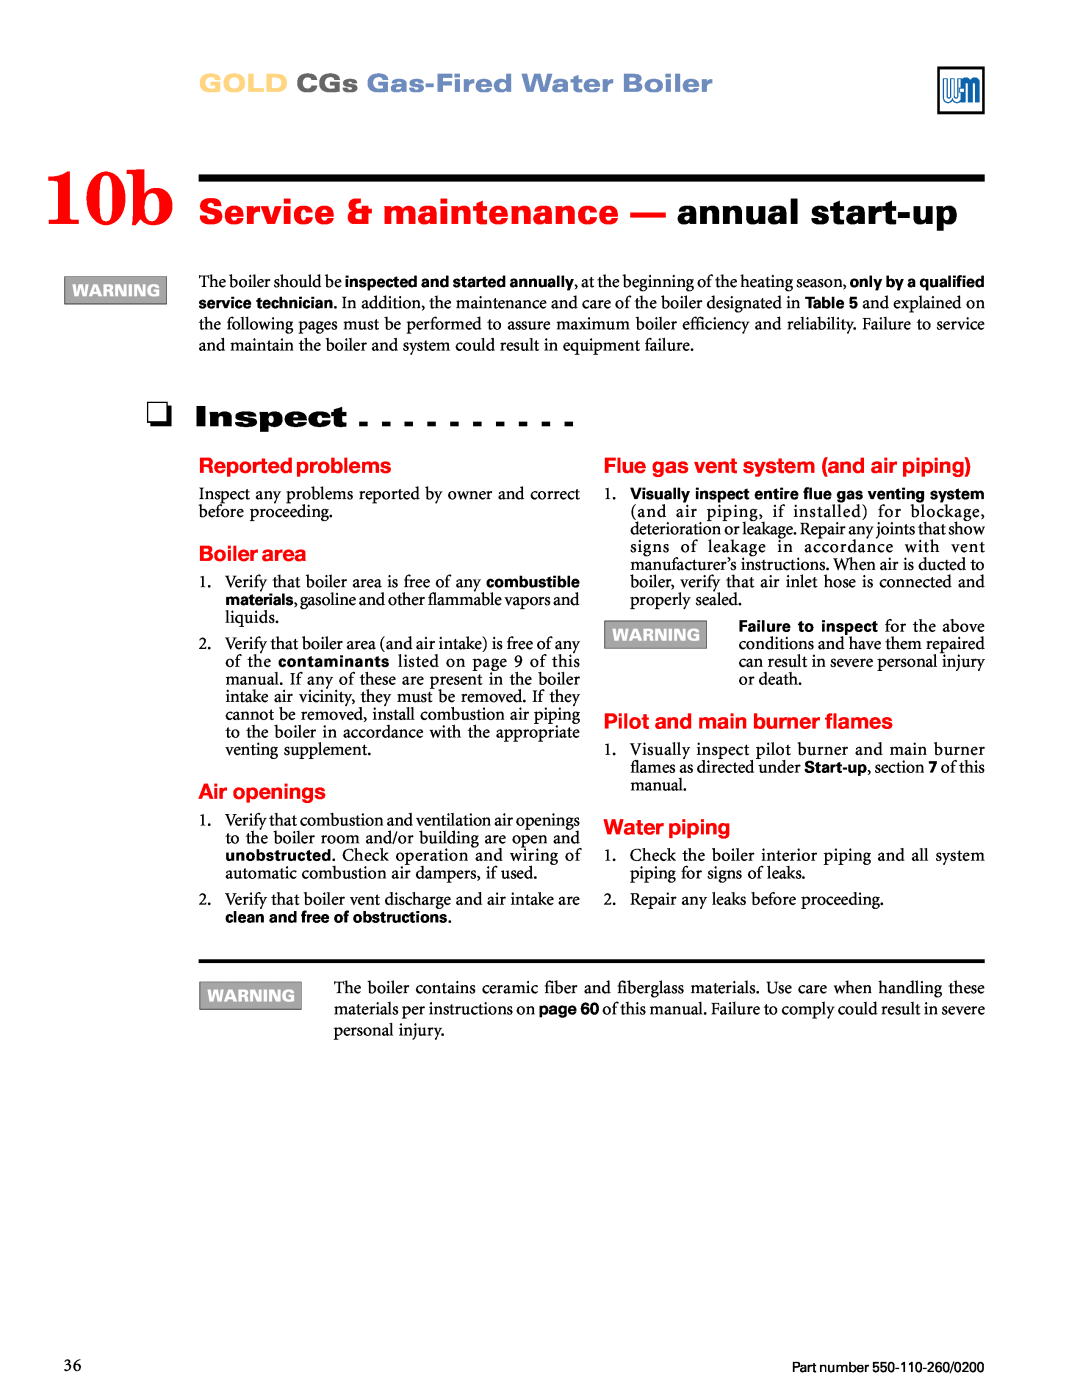 Weil-McLain 550-110-260/02002 manual 10b Service & maintenance — annual start-up, Inspect, GOLD CGs Gas-FiredWater Boiler 